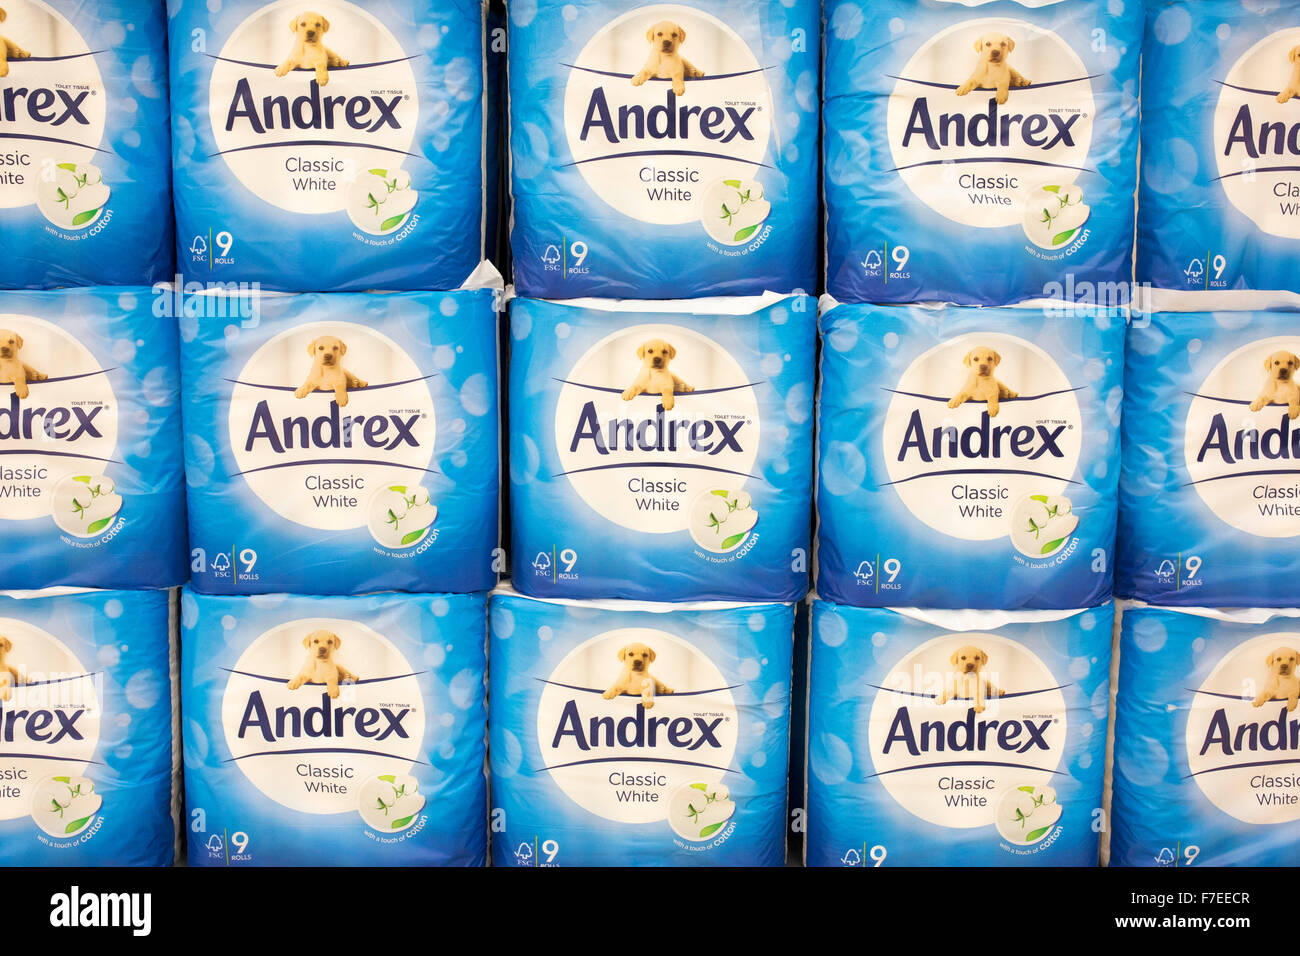 Andrex papel higiénico en un supermercado Foto de stock